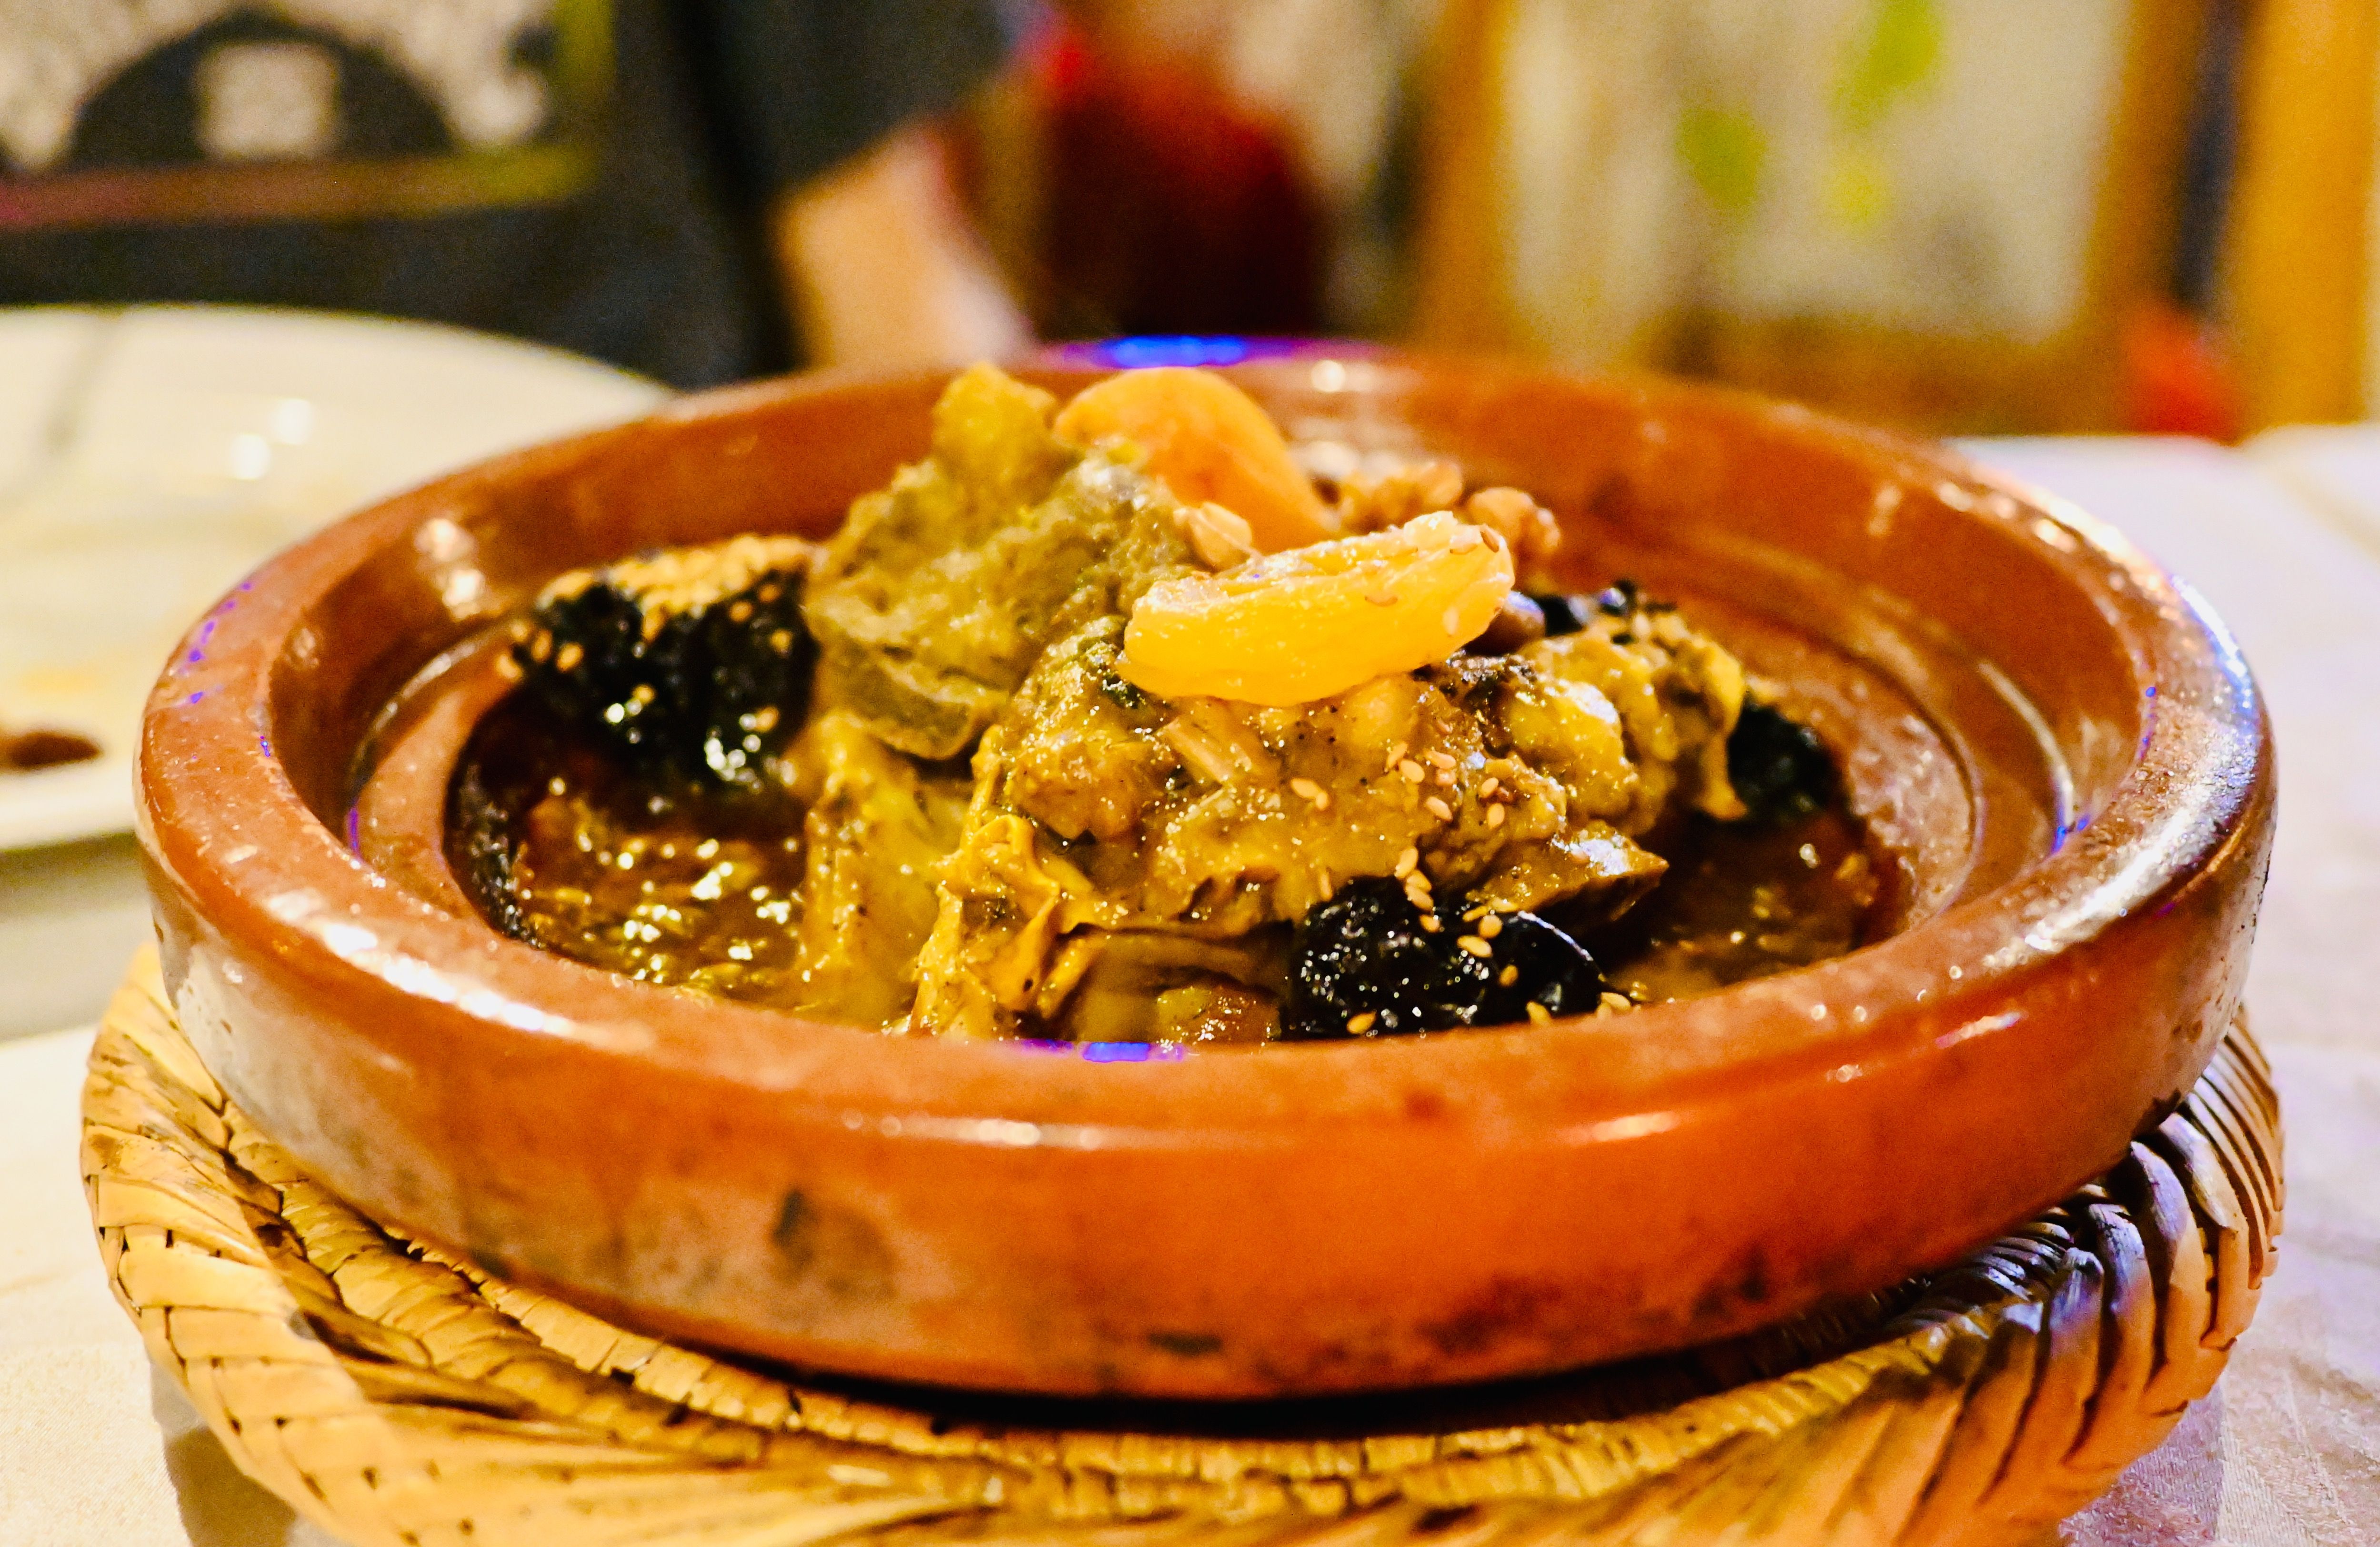 Marokko for family individuell - Erfahrungen mit Kindern in Marokko - marokkanische Küche